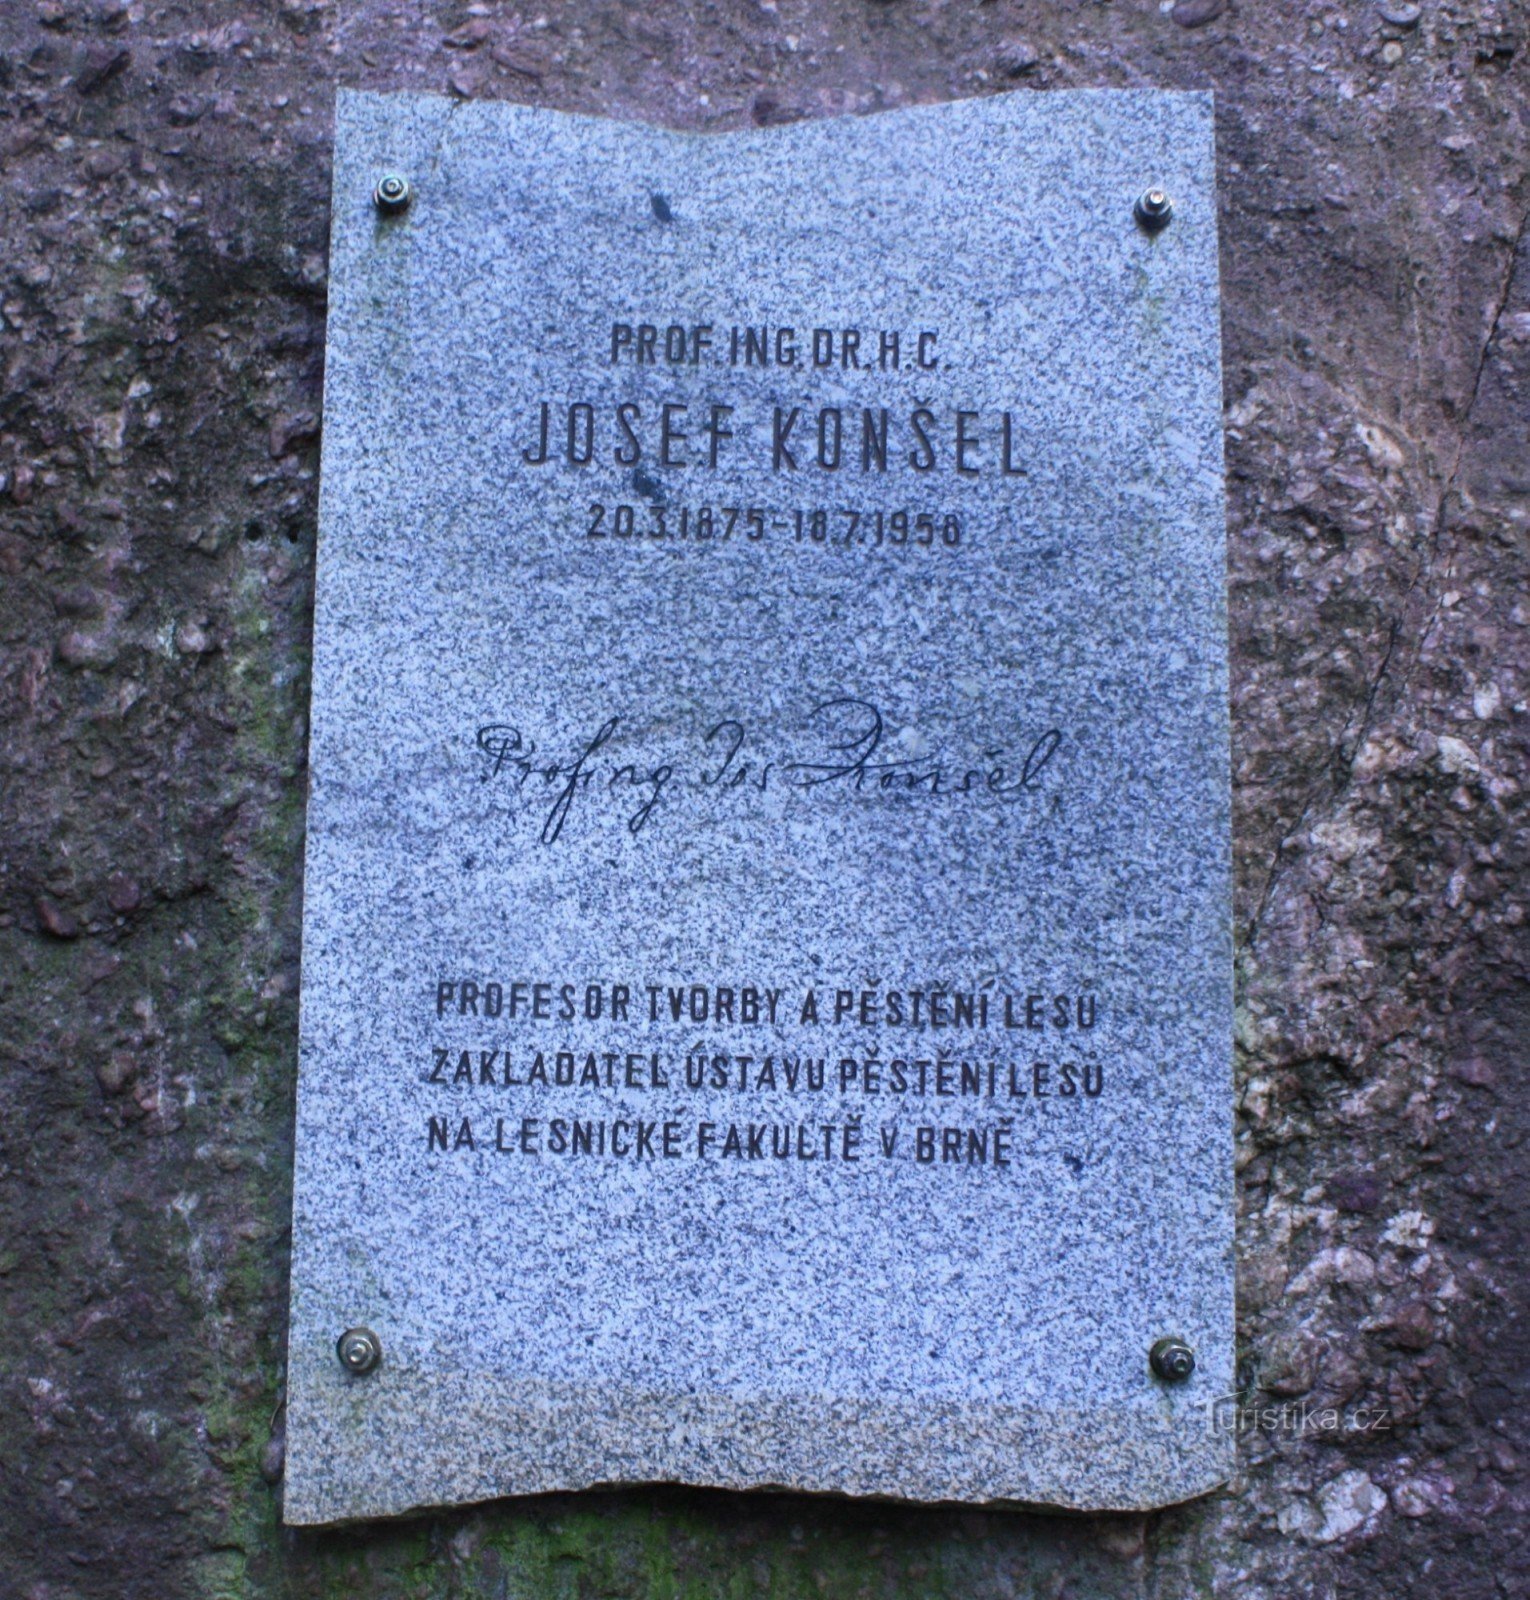 Μνημείο του Josef Konšel